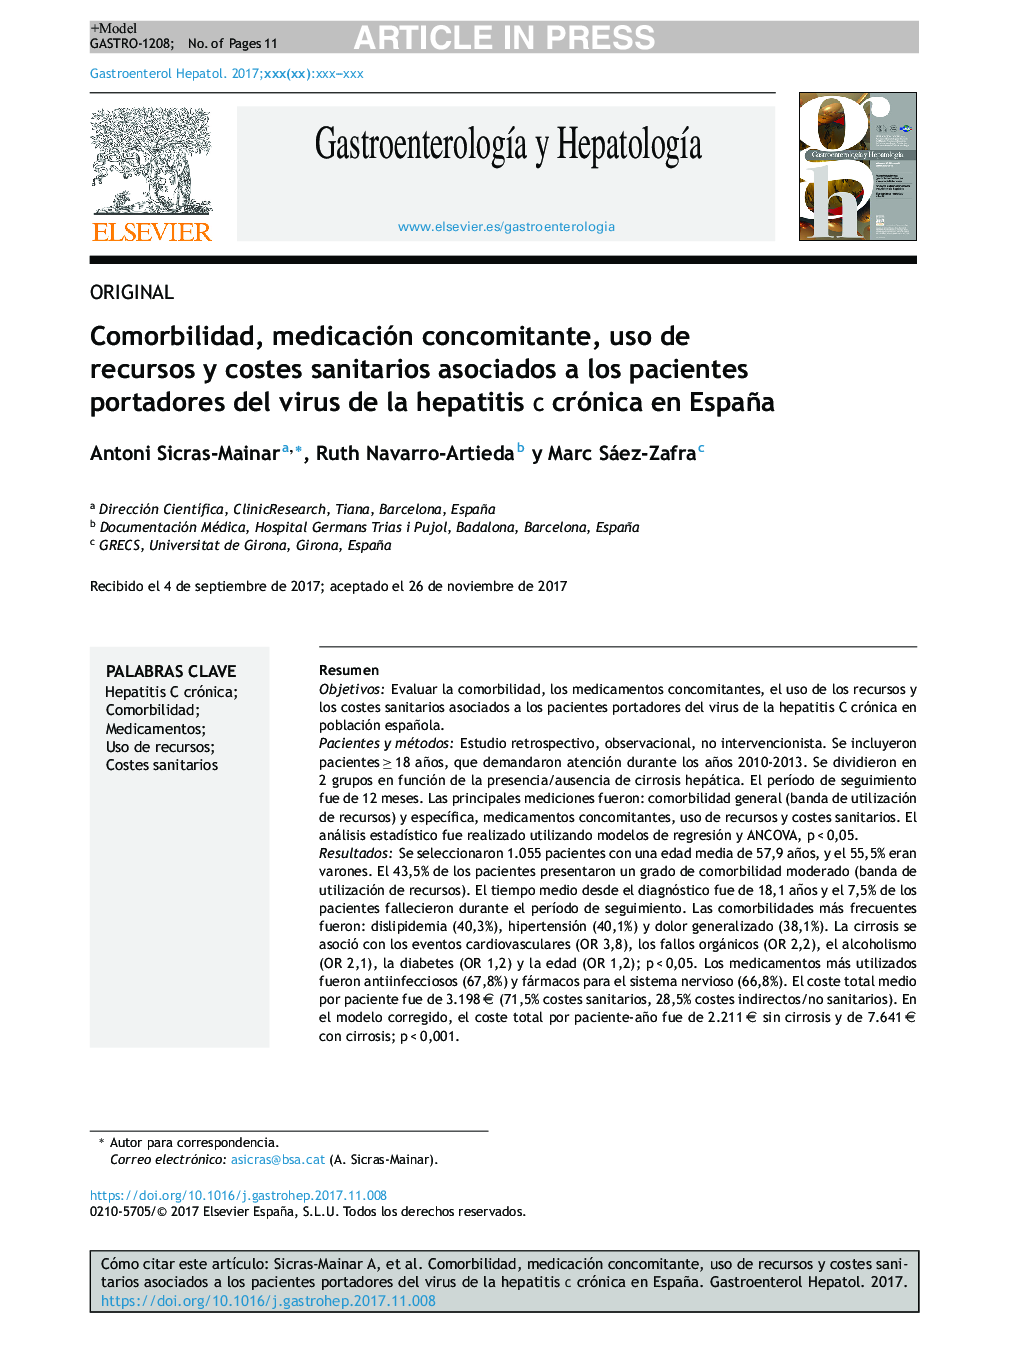 Comorbilidad, medicación concomitante, uso de recursos y costes sanitarios asociados a los pacientes portadores del virus de la hepatitis C crónica en España